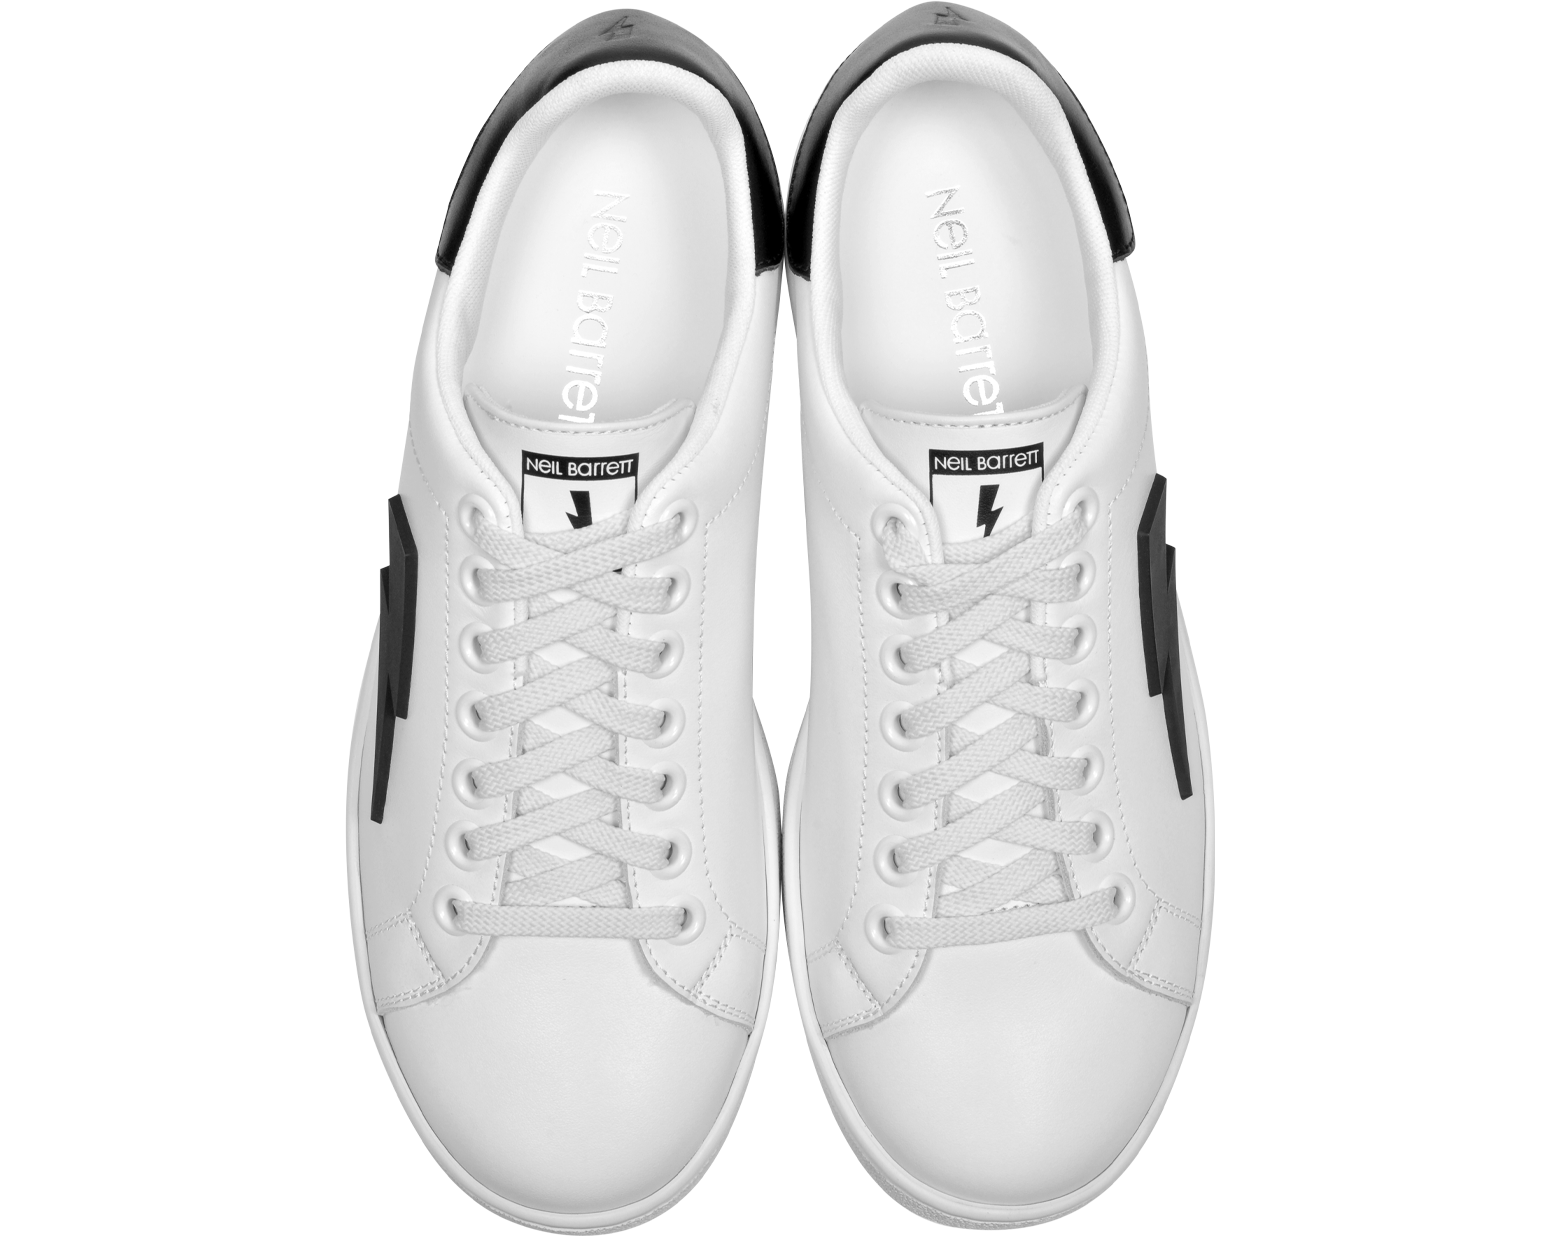 Neil Barrett White and Black Leather Thunderbolt Tennis Sneakers 39 (6 ...